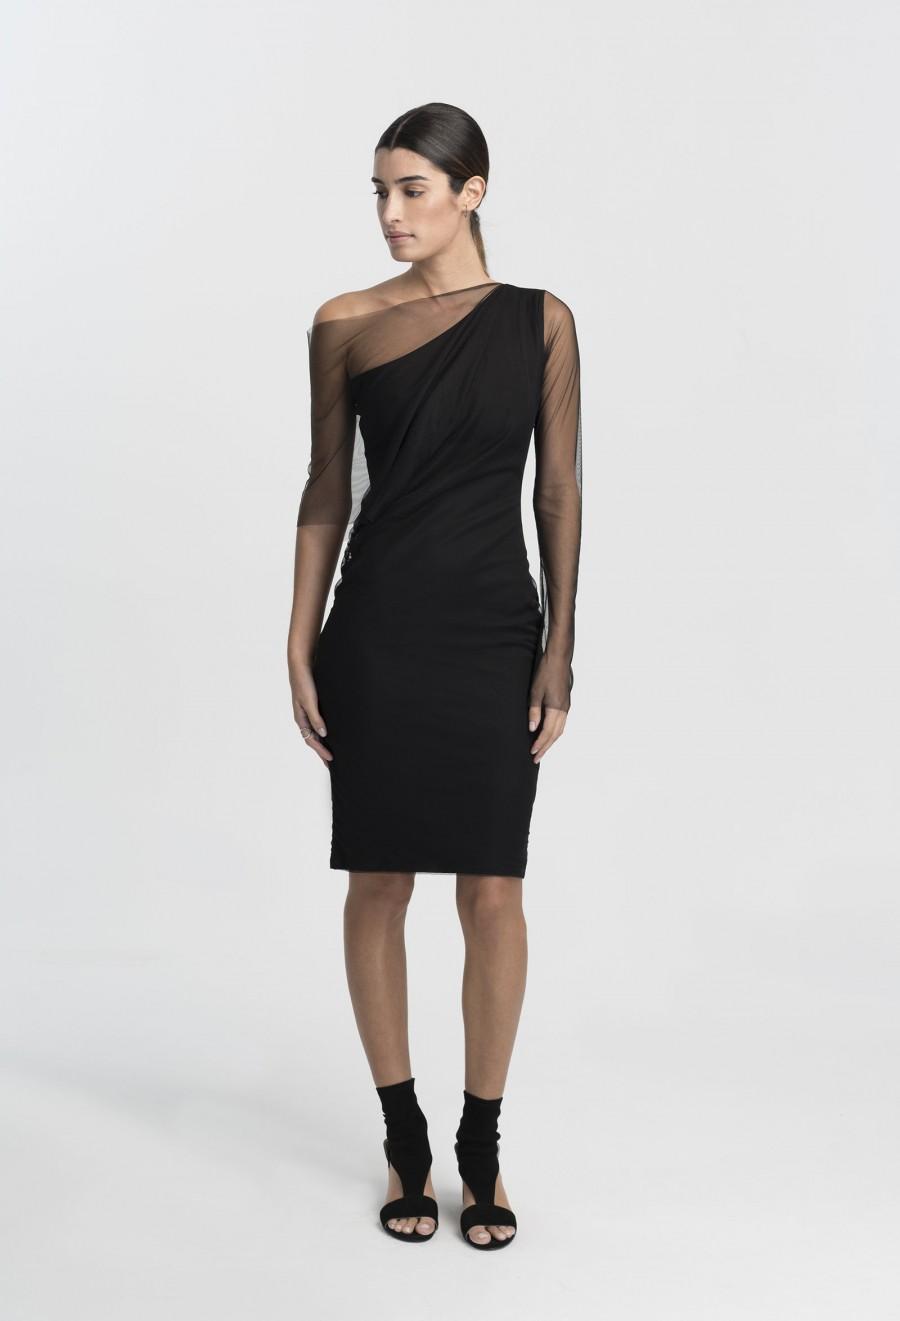 زفاف - Pencil Dress / Black Dress / One Shoulder Dress / Party Dress / Cocktail Dress / Evening Gown / Marcellamoda - MD1010